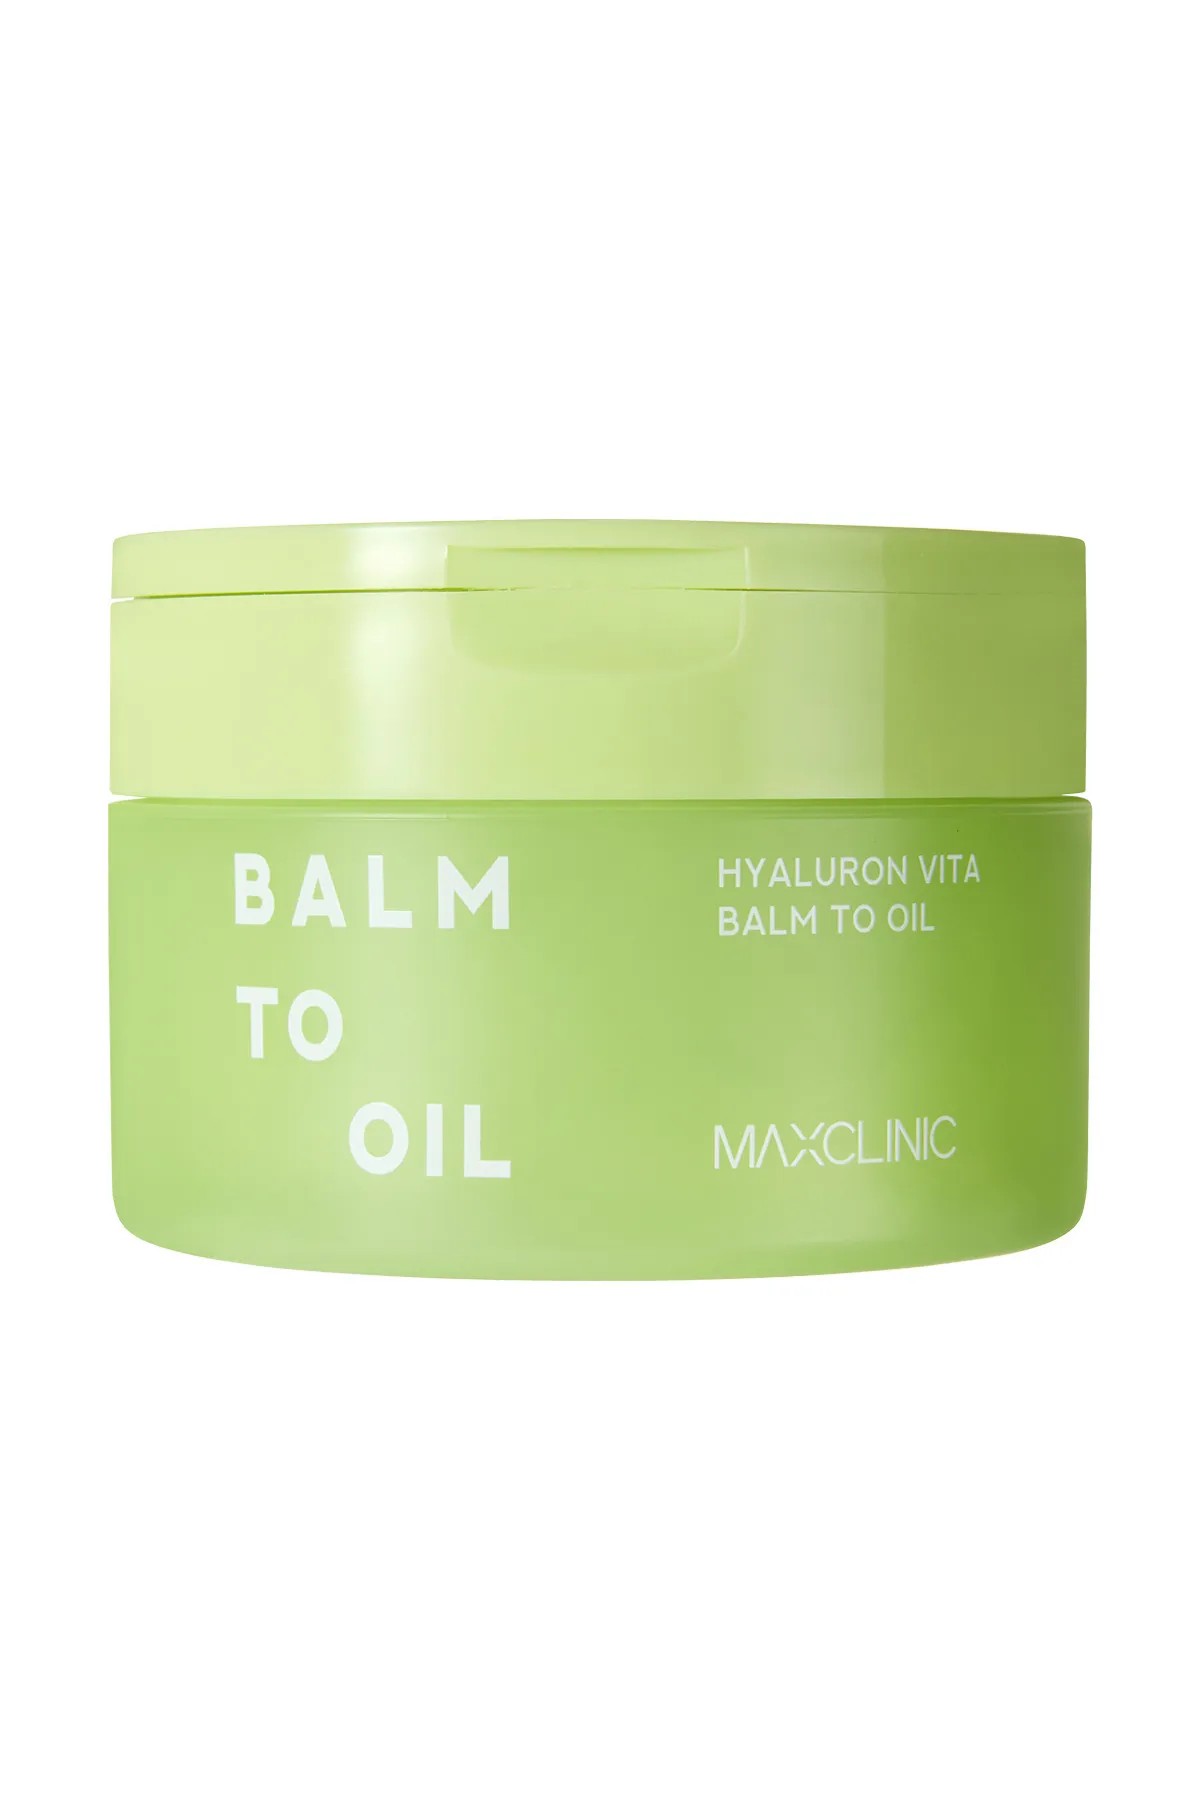 Makyaj ve Güneş Kremi Temizleme Balmı MAXCLINIC Hyaluron Vita Balm to Oil 90ml